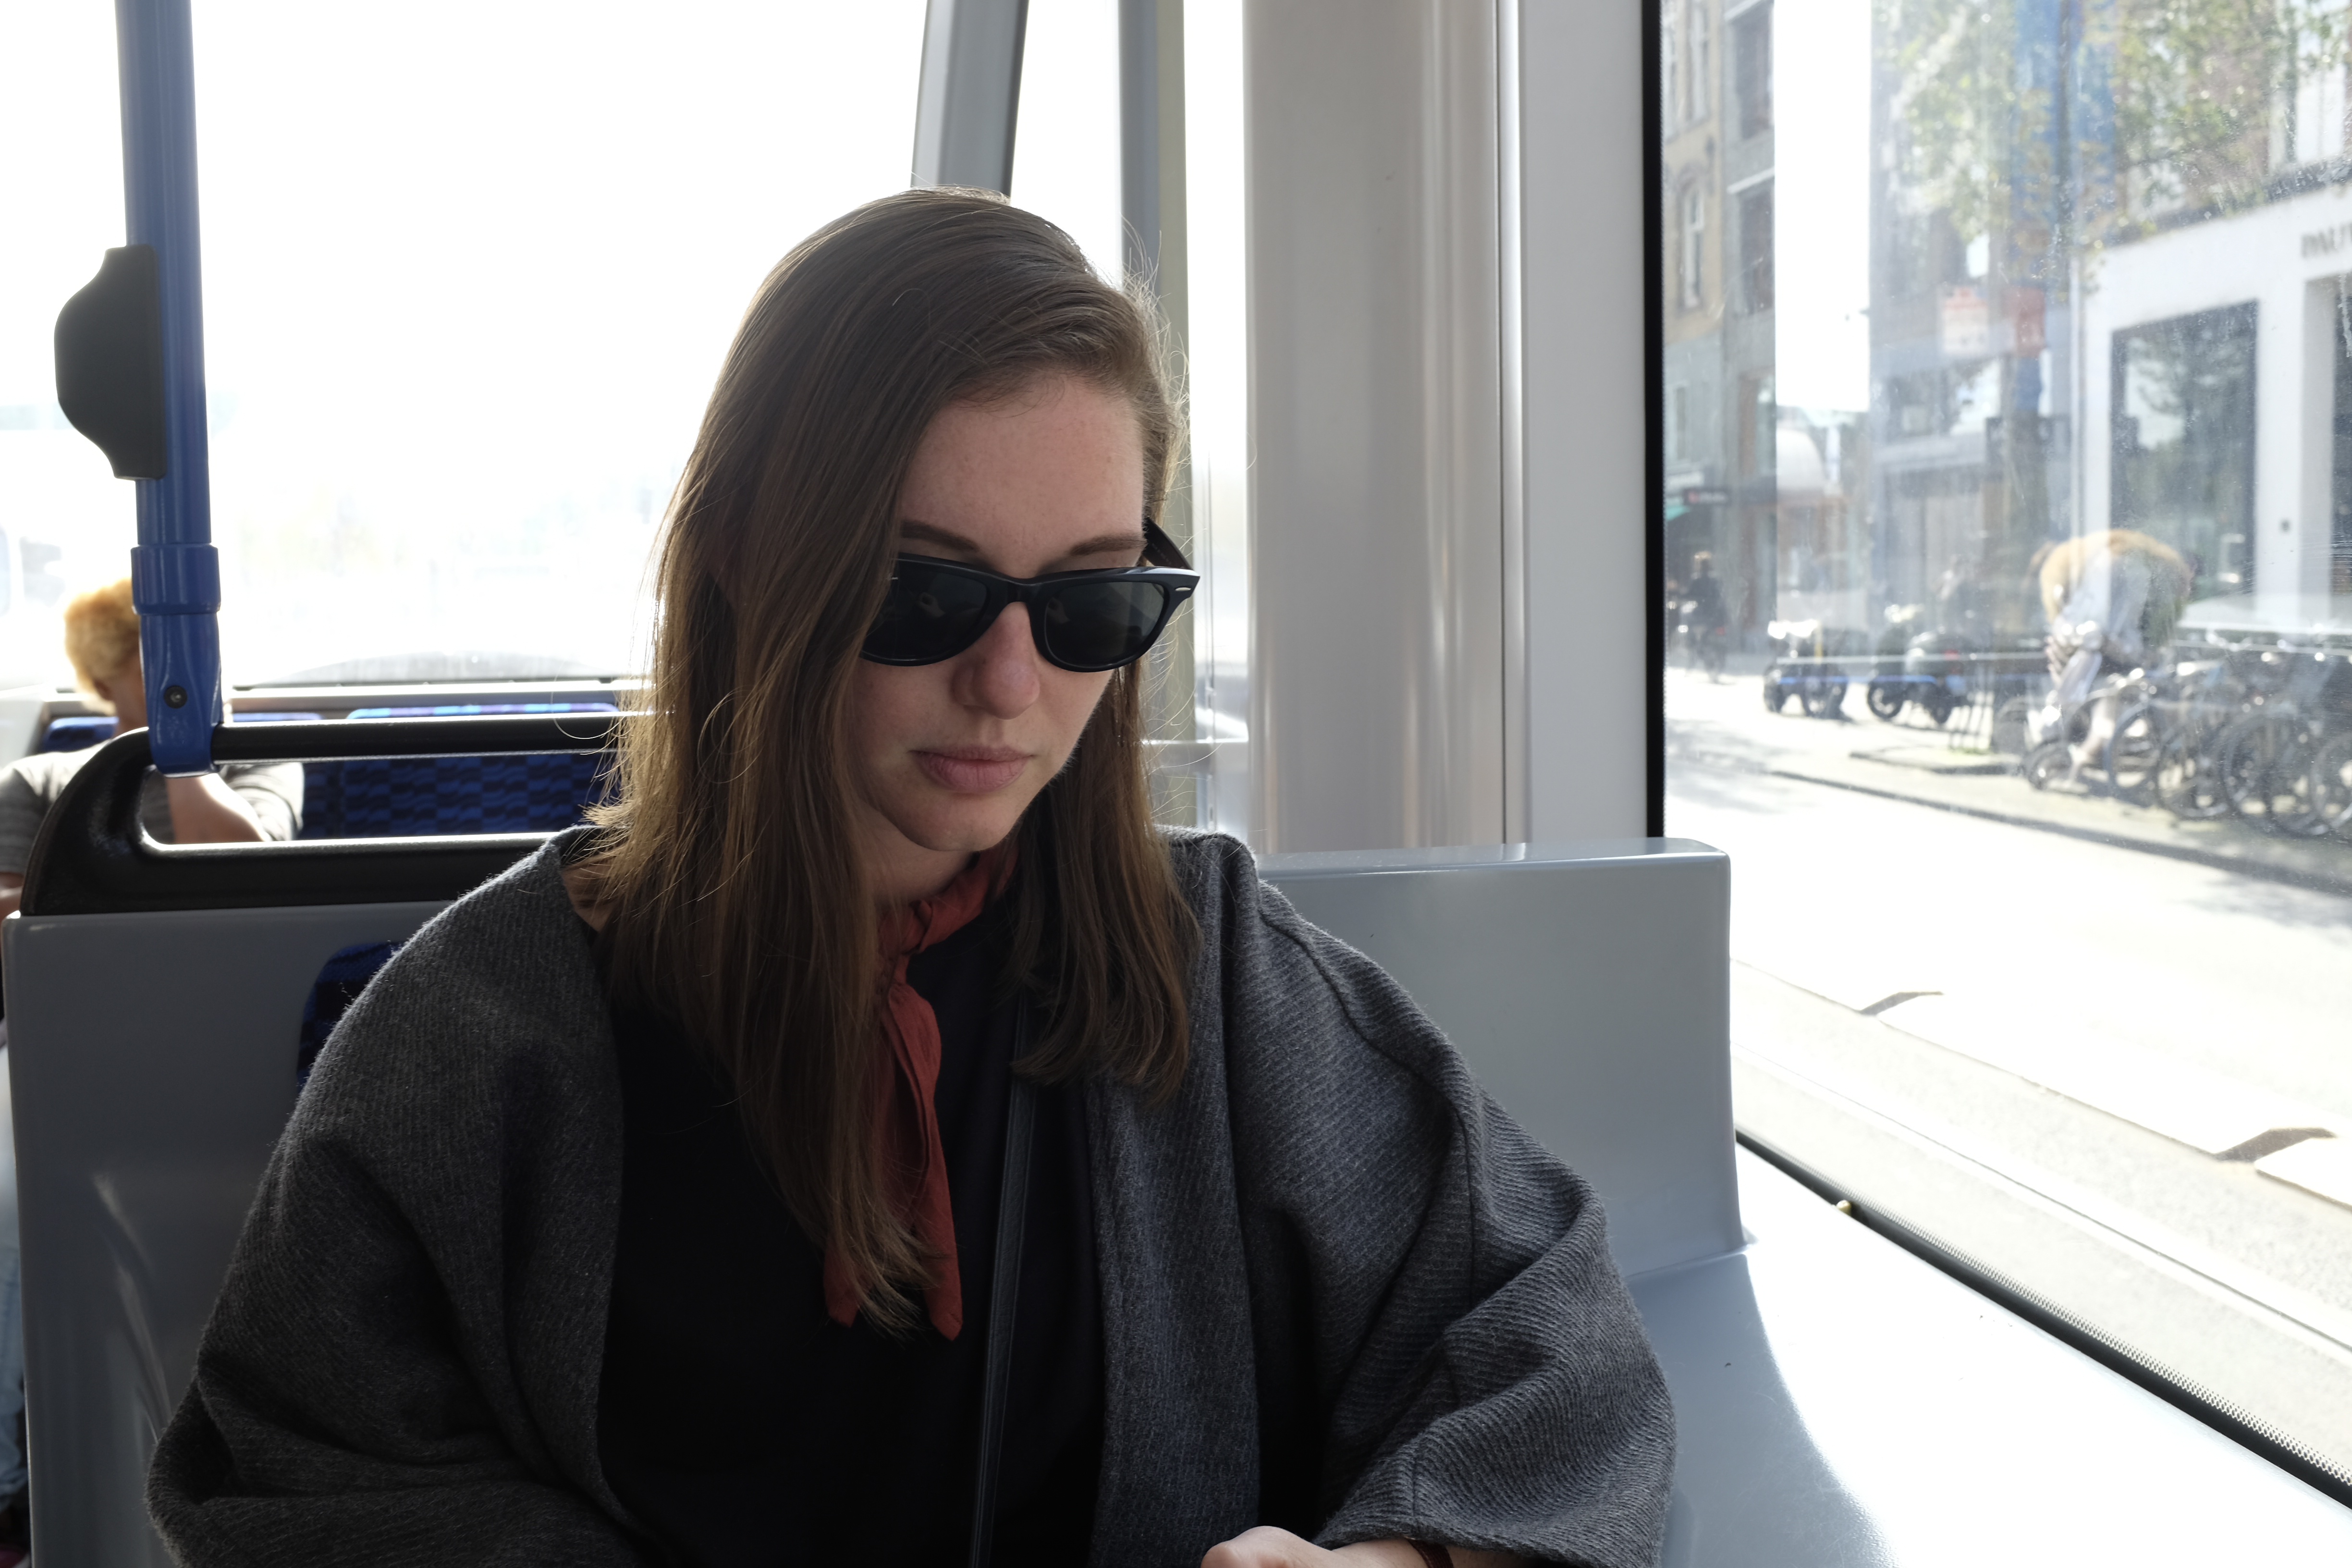 Alyssa sits on a tram car in Amsterdam